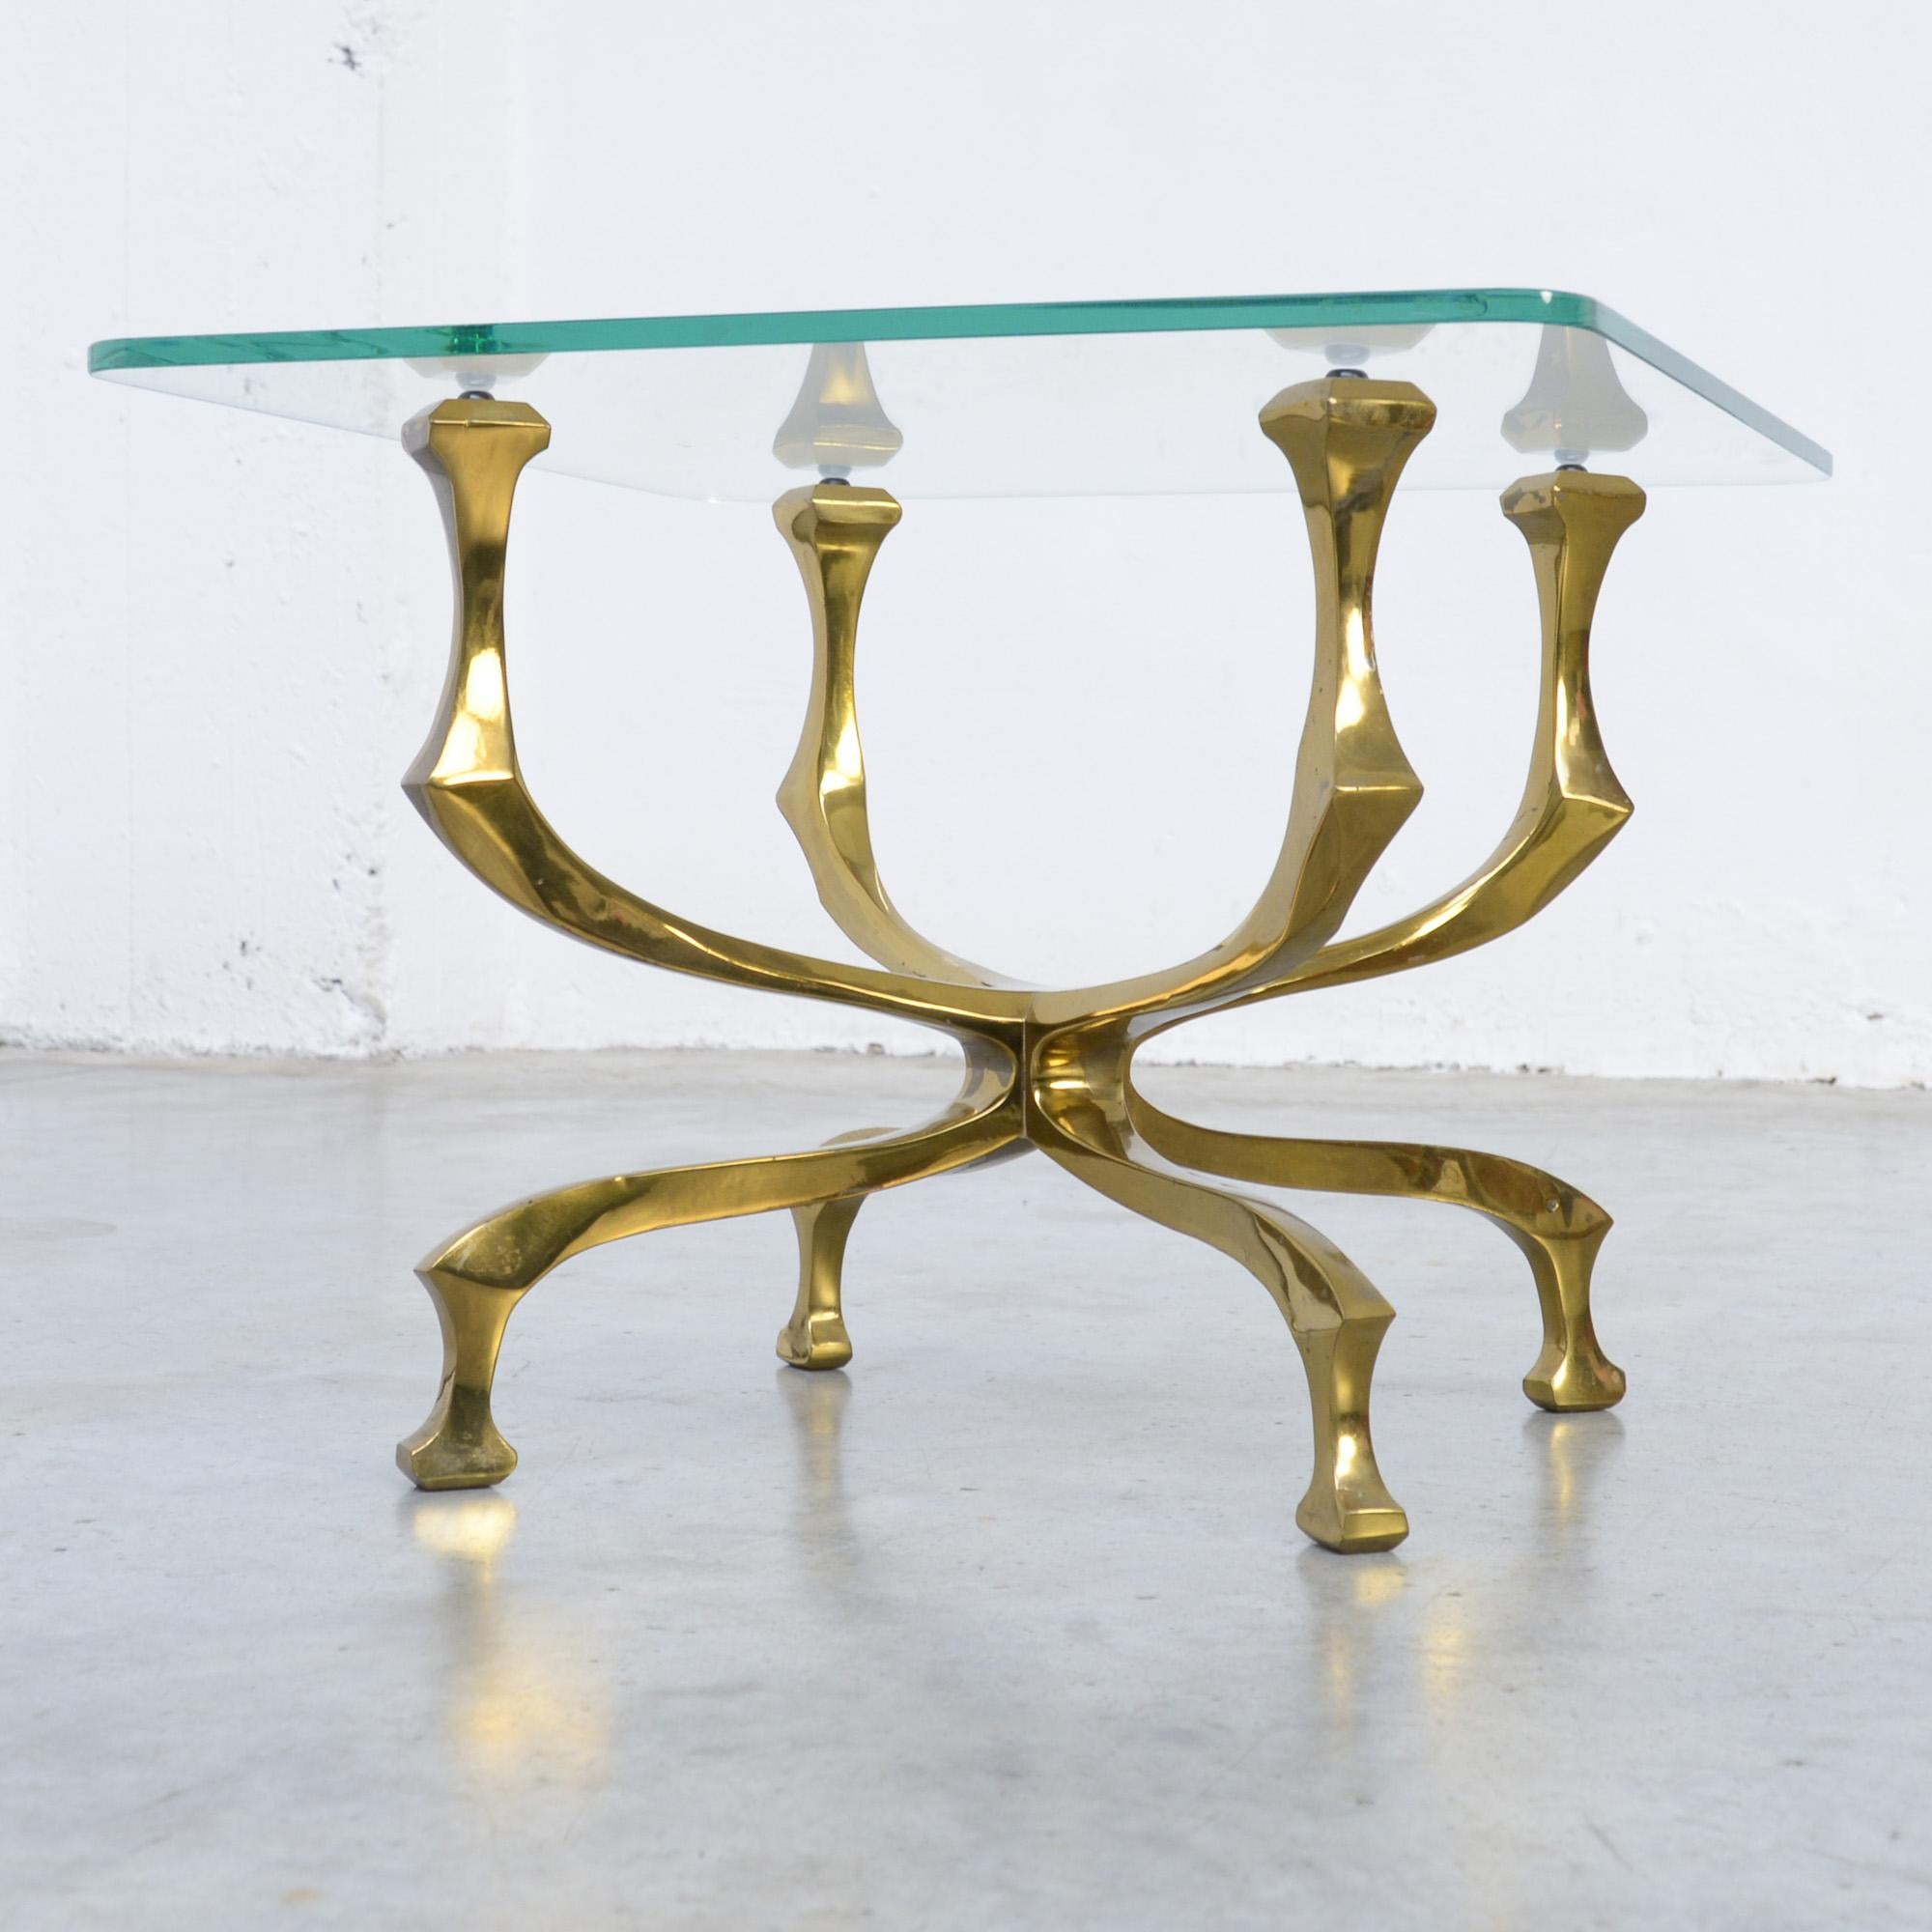 Dieser stilvolle Beistell- oder Couchtisch wurde in den 1970er Jahren von Willy Daro entworfen.
Die Kristallglasplatte ruht auf dem kunstvoll gefertigten Bronzesockel. Der Tisch ist von der Künstlerin signiert und in sehr gutem Zustand. Die